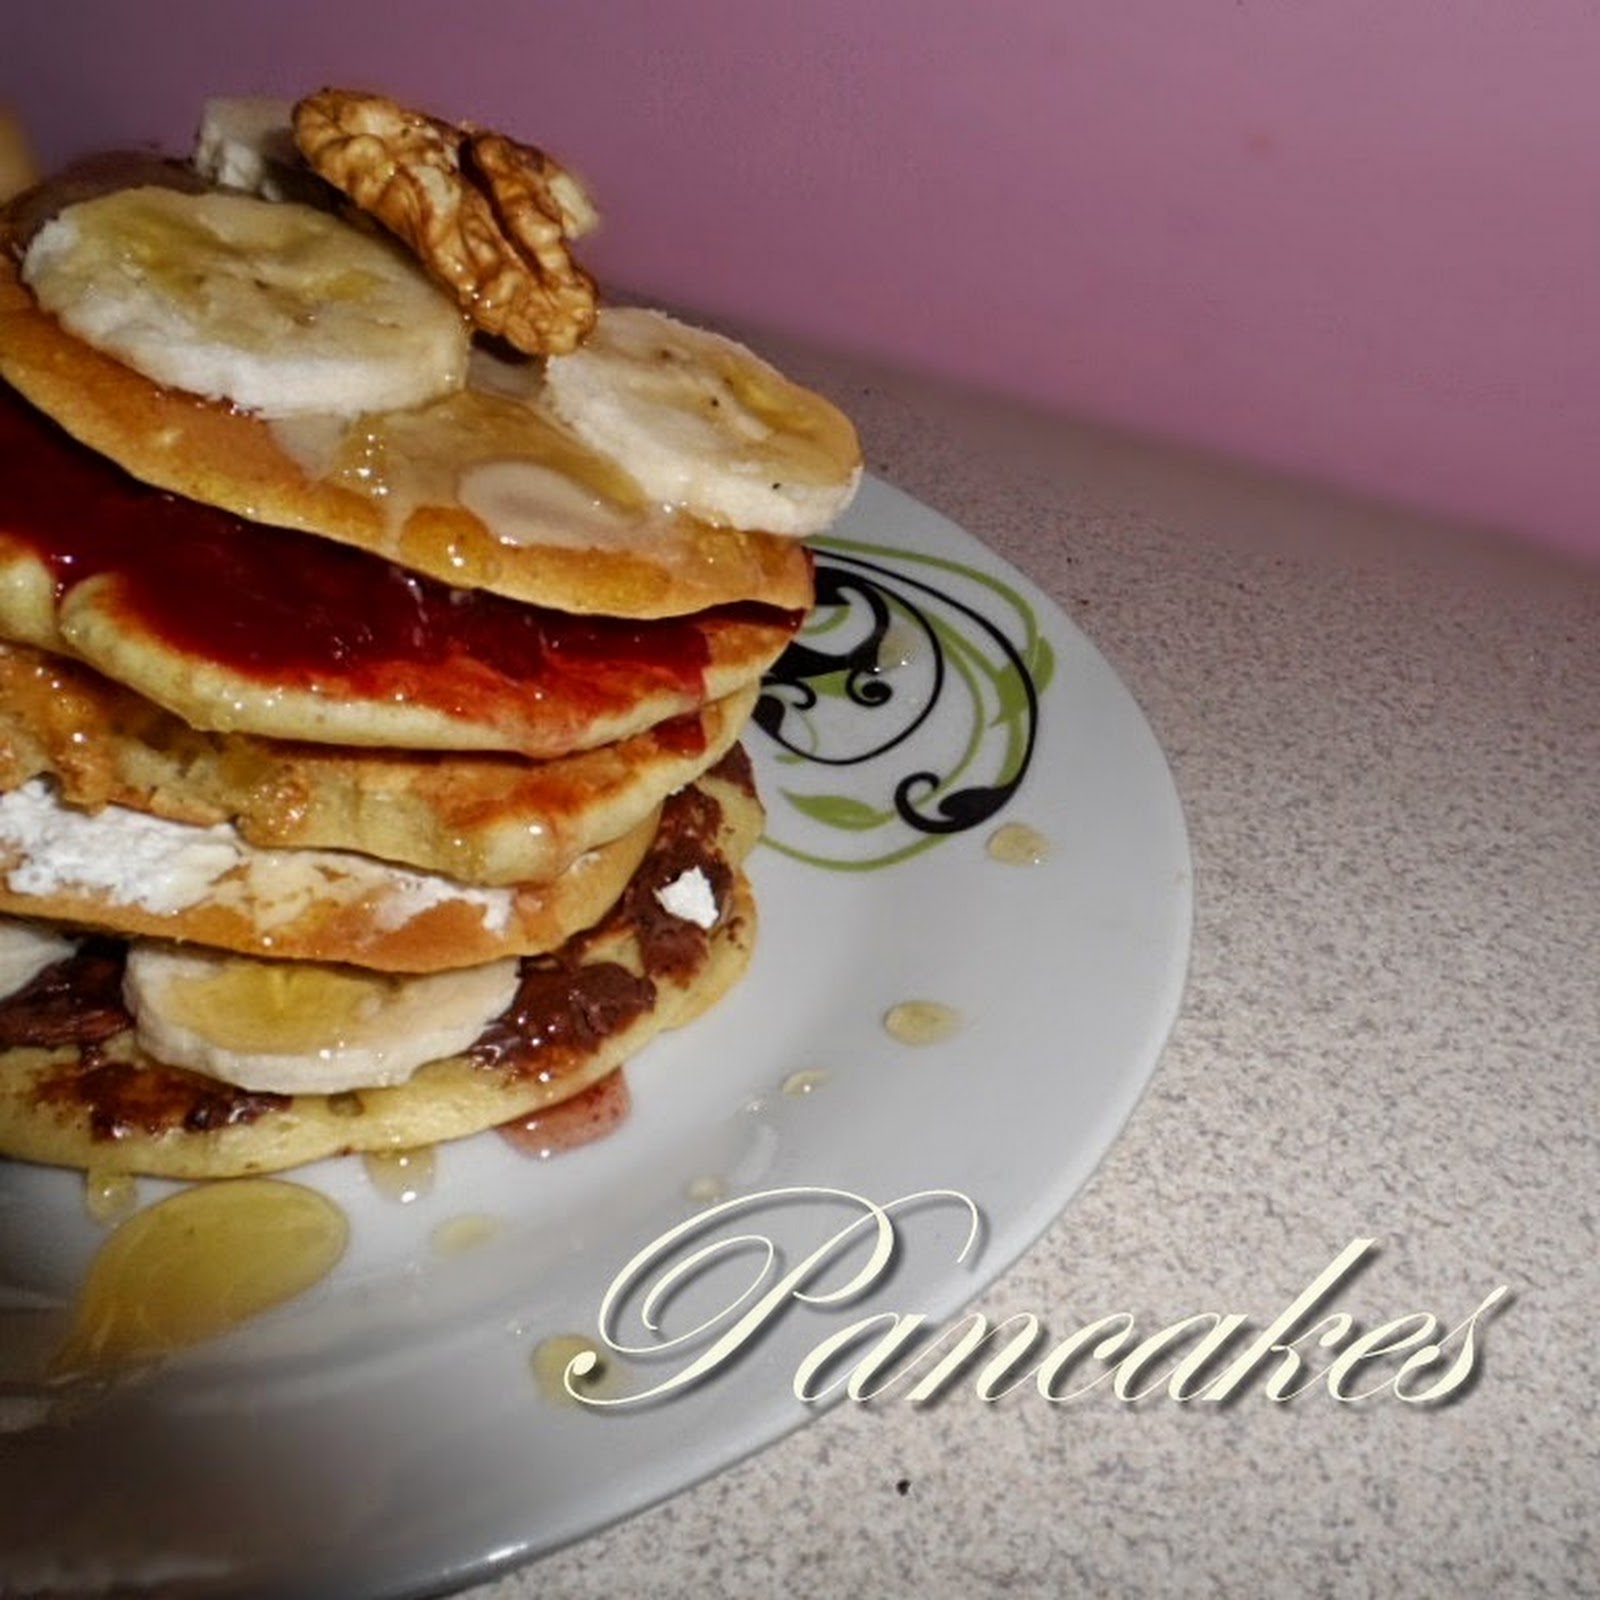 Pancake Day!